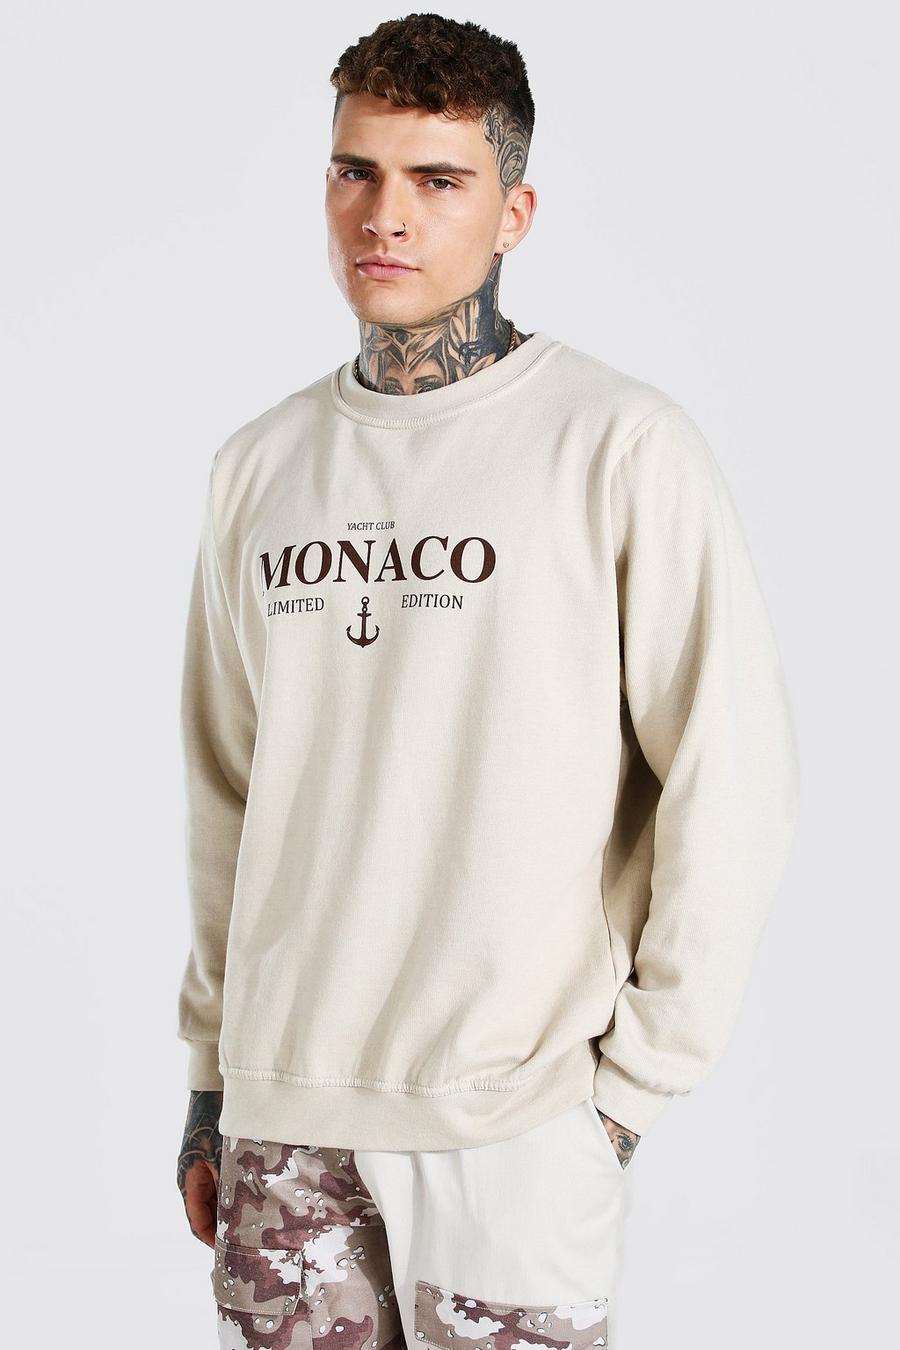 Sand beige Oversized Monaco Printed Sweatshirt